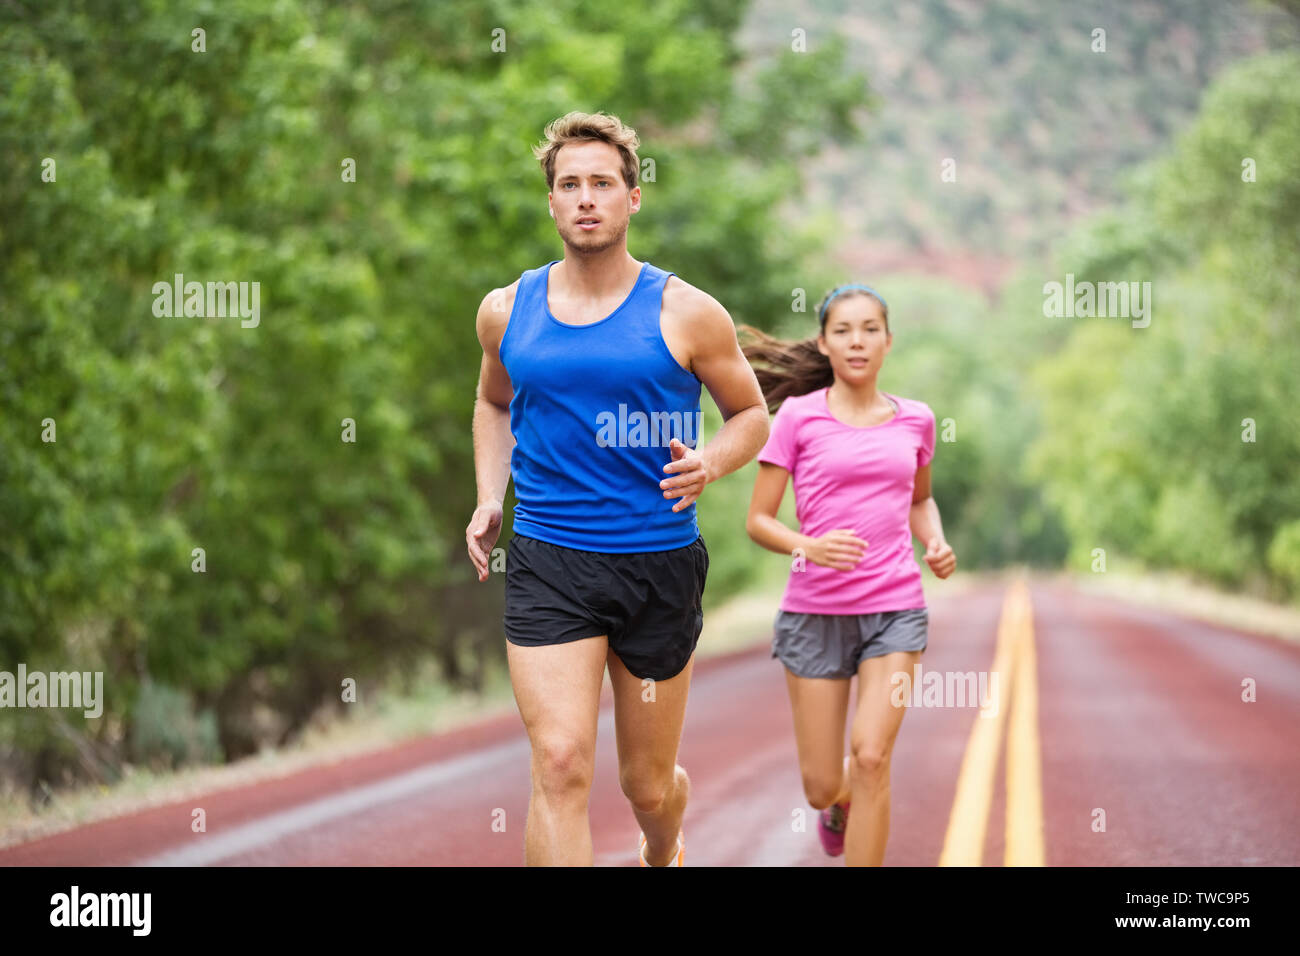 Fitness Laufen junge Paar training Marathon konzentrierte sich auf Road Trail im Sommer Natur konzentriert. Sportlich gesund gemischten Rasse Frau und stattlichen kaukasischen Mann joggen außerhalb. Sportliche Menschen in 20 s Stockfoto